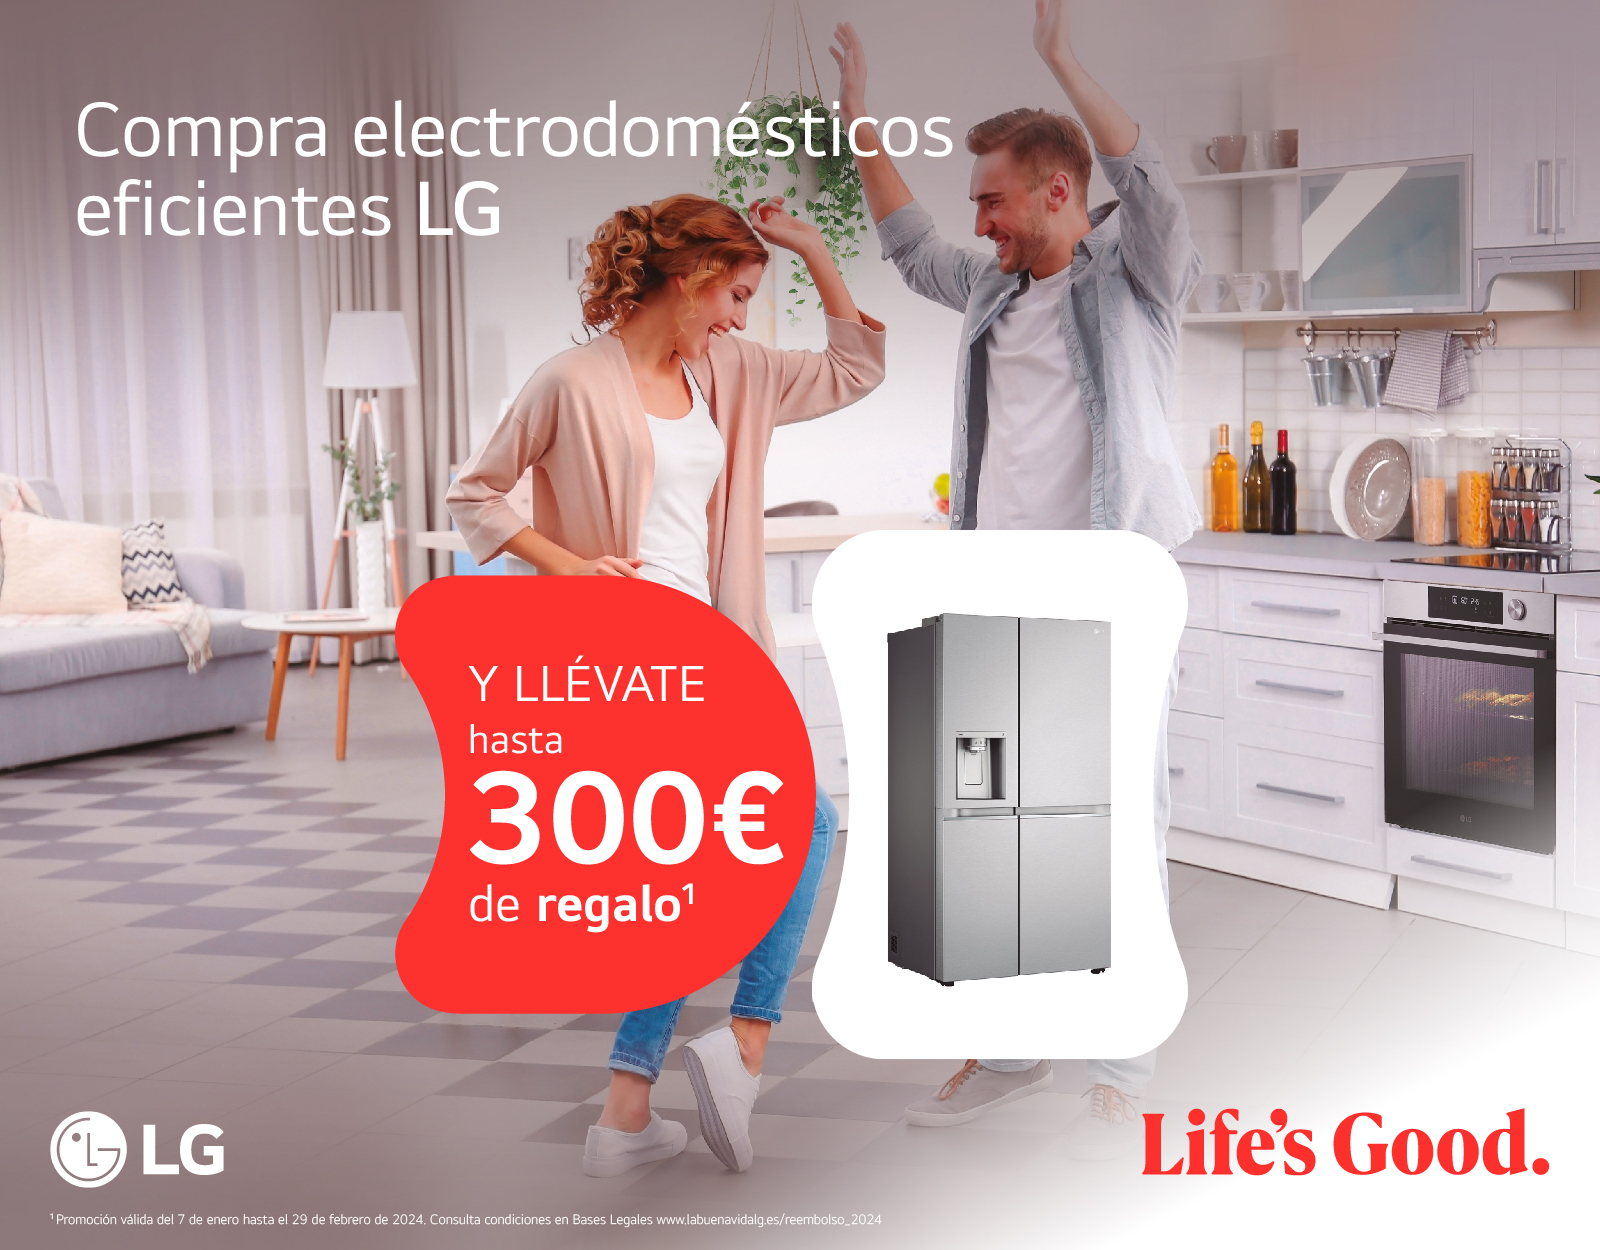 Llévate un reembolso de hasta 300 euros por la compra de tu electrodoméstico eficiente LG